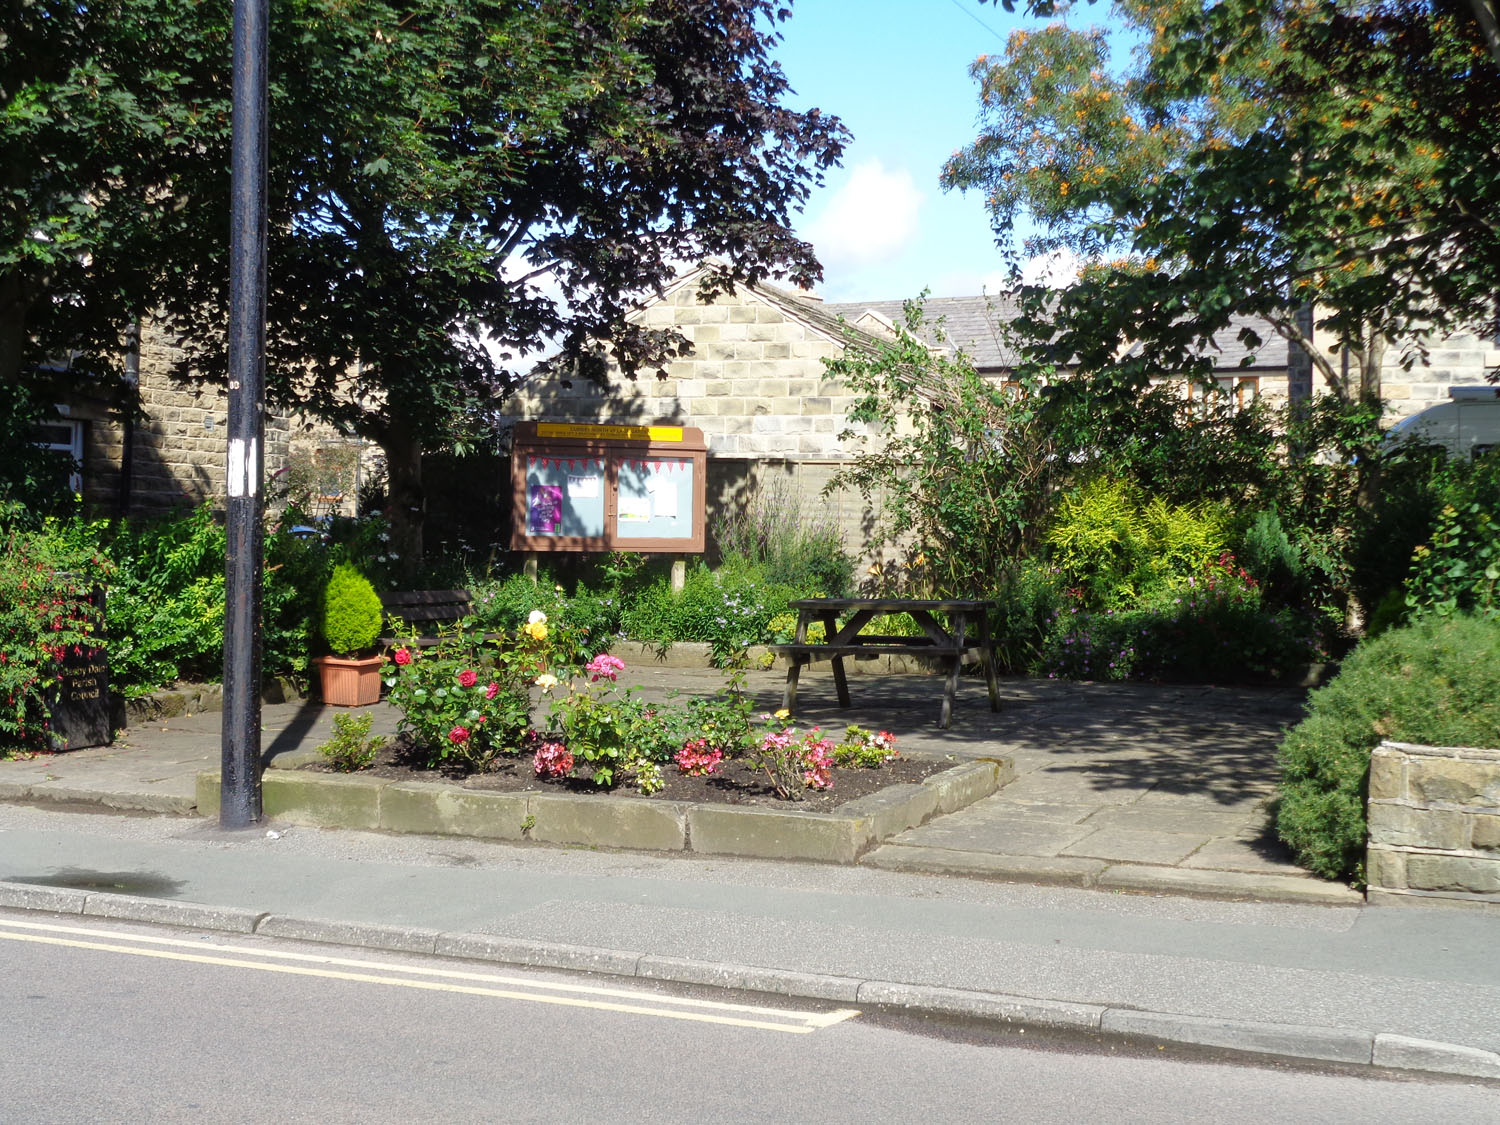 Village garden at Upper Cumberworth